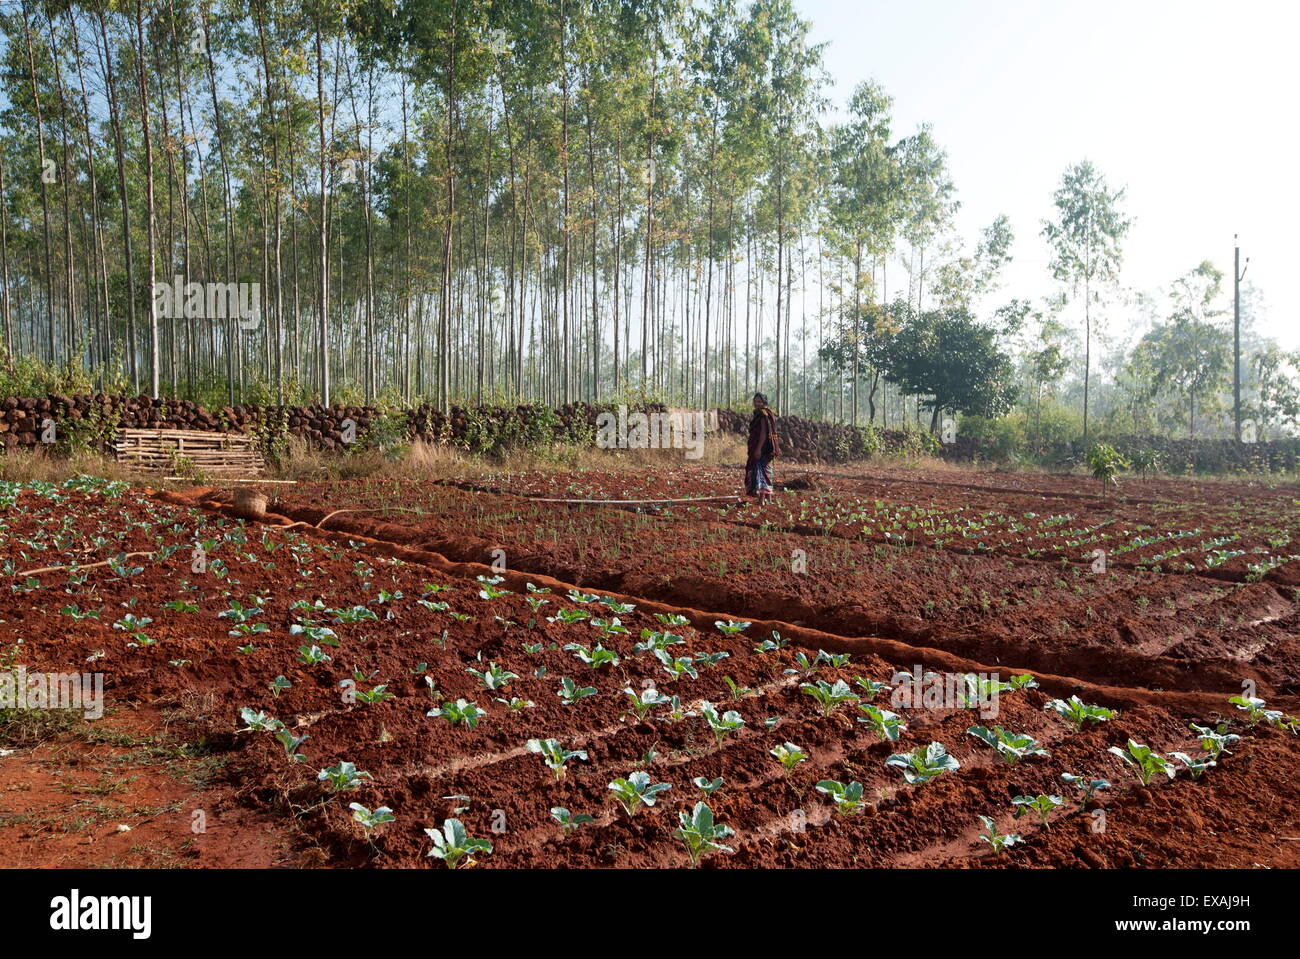 Junge Frau Gärtner Pflanzen grün Kohl sorgfältig in die helle rote Erde Koraput District, Orissa (Odisha), Indien, Asien Stockfoto